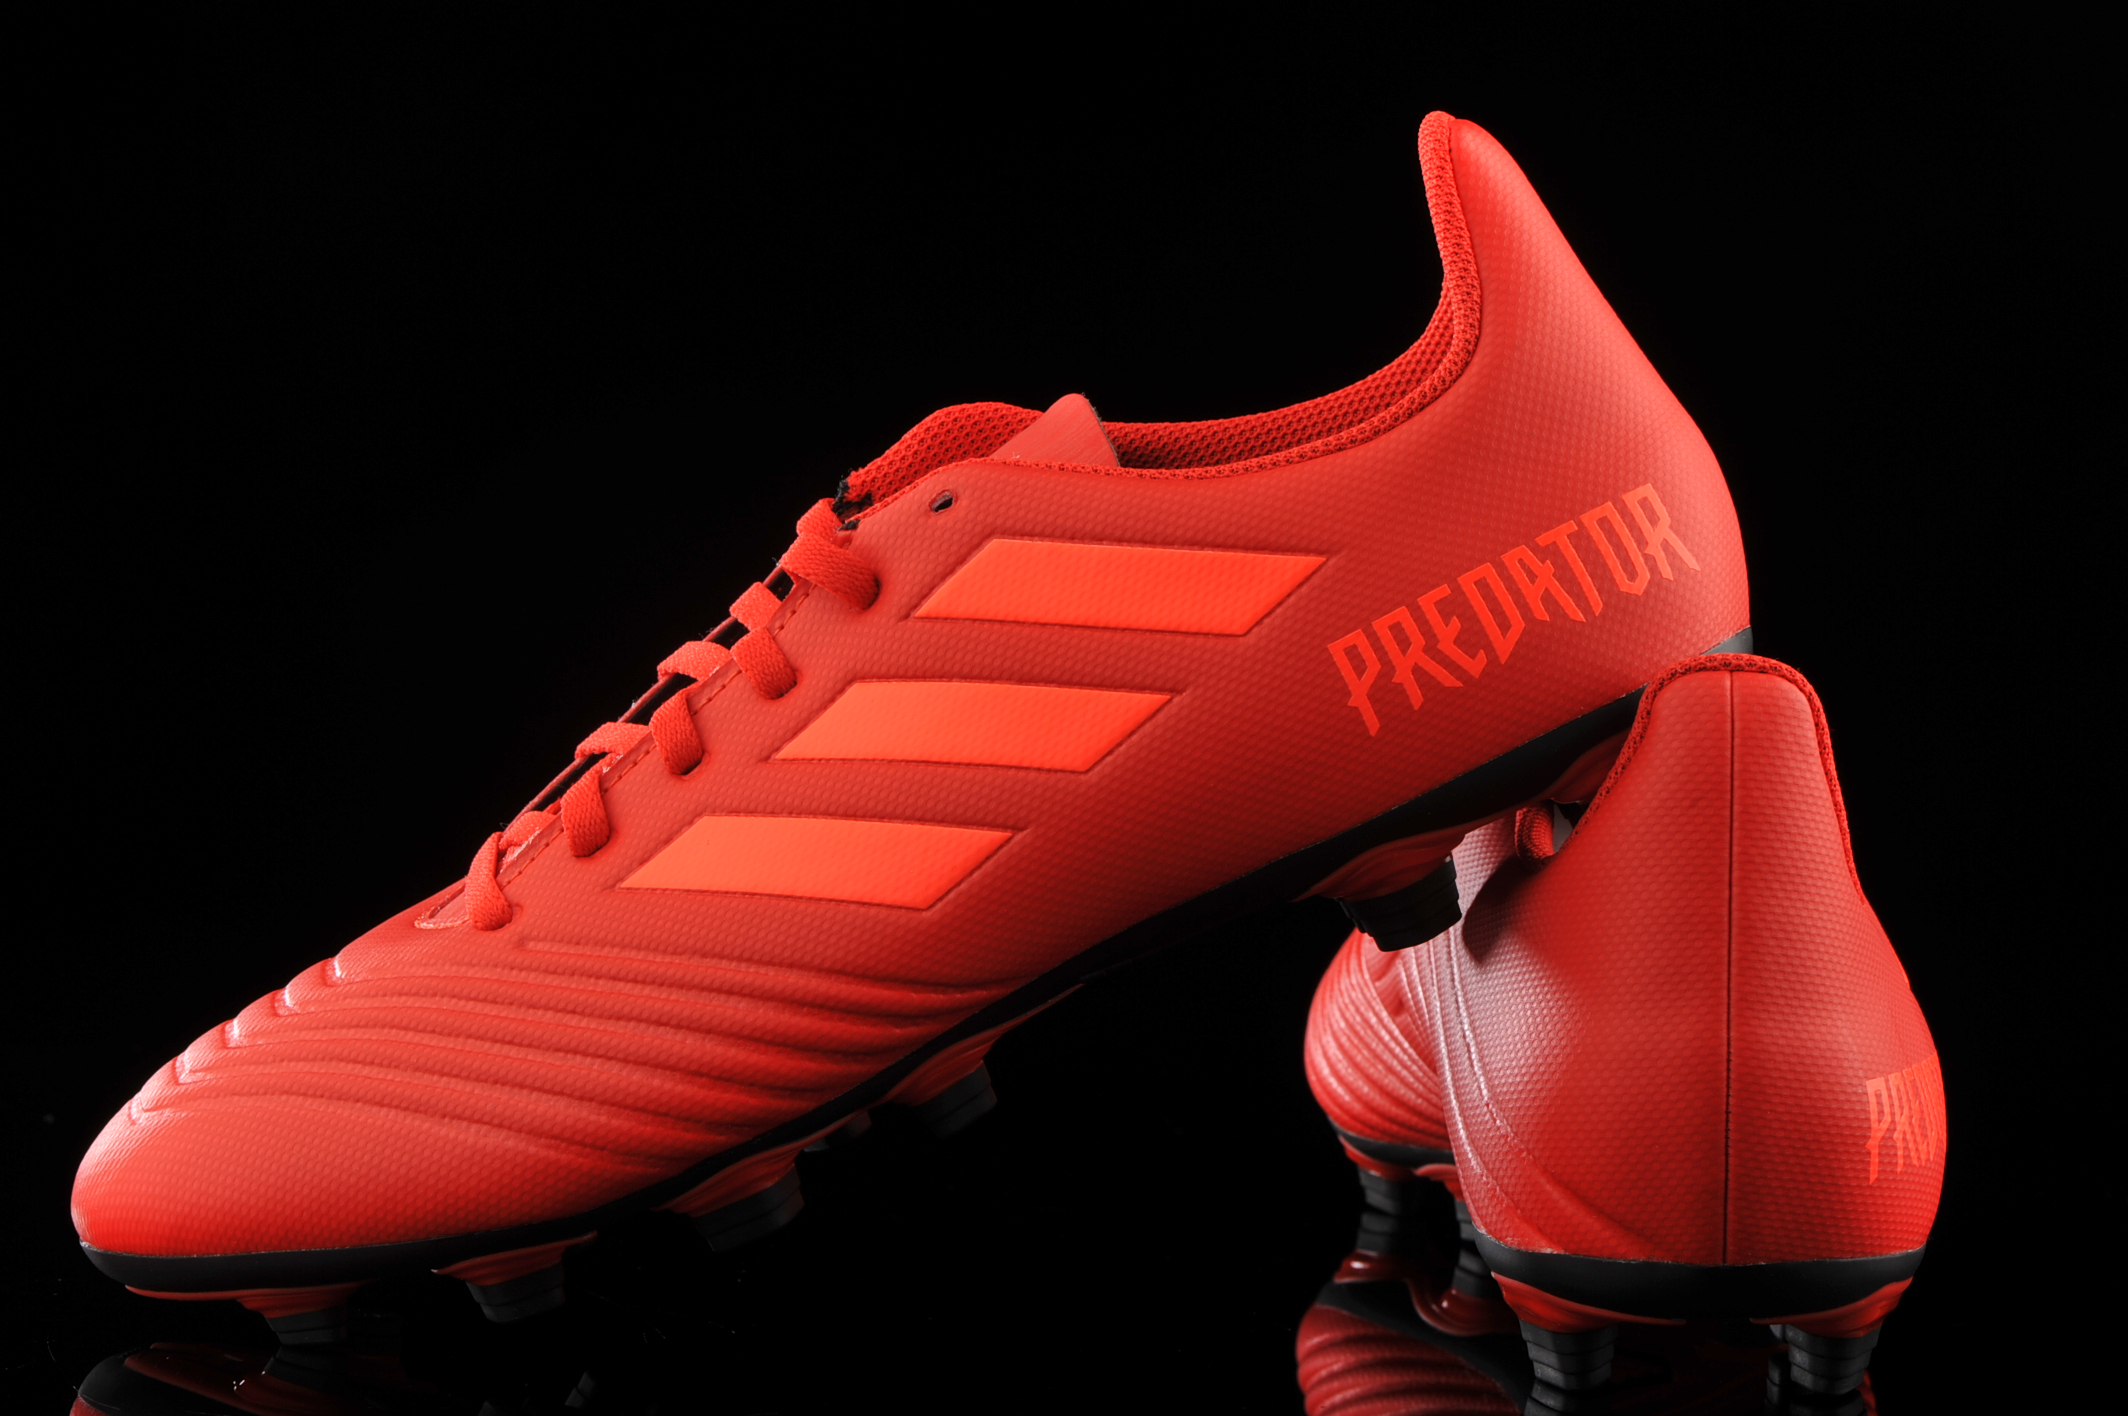 adidas Predator 19.4 FxG D97970 | R-GOL.com - Football boots \u0026 equipment